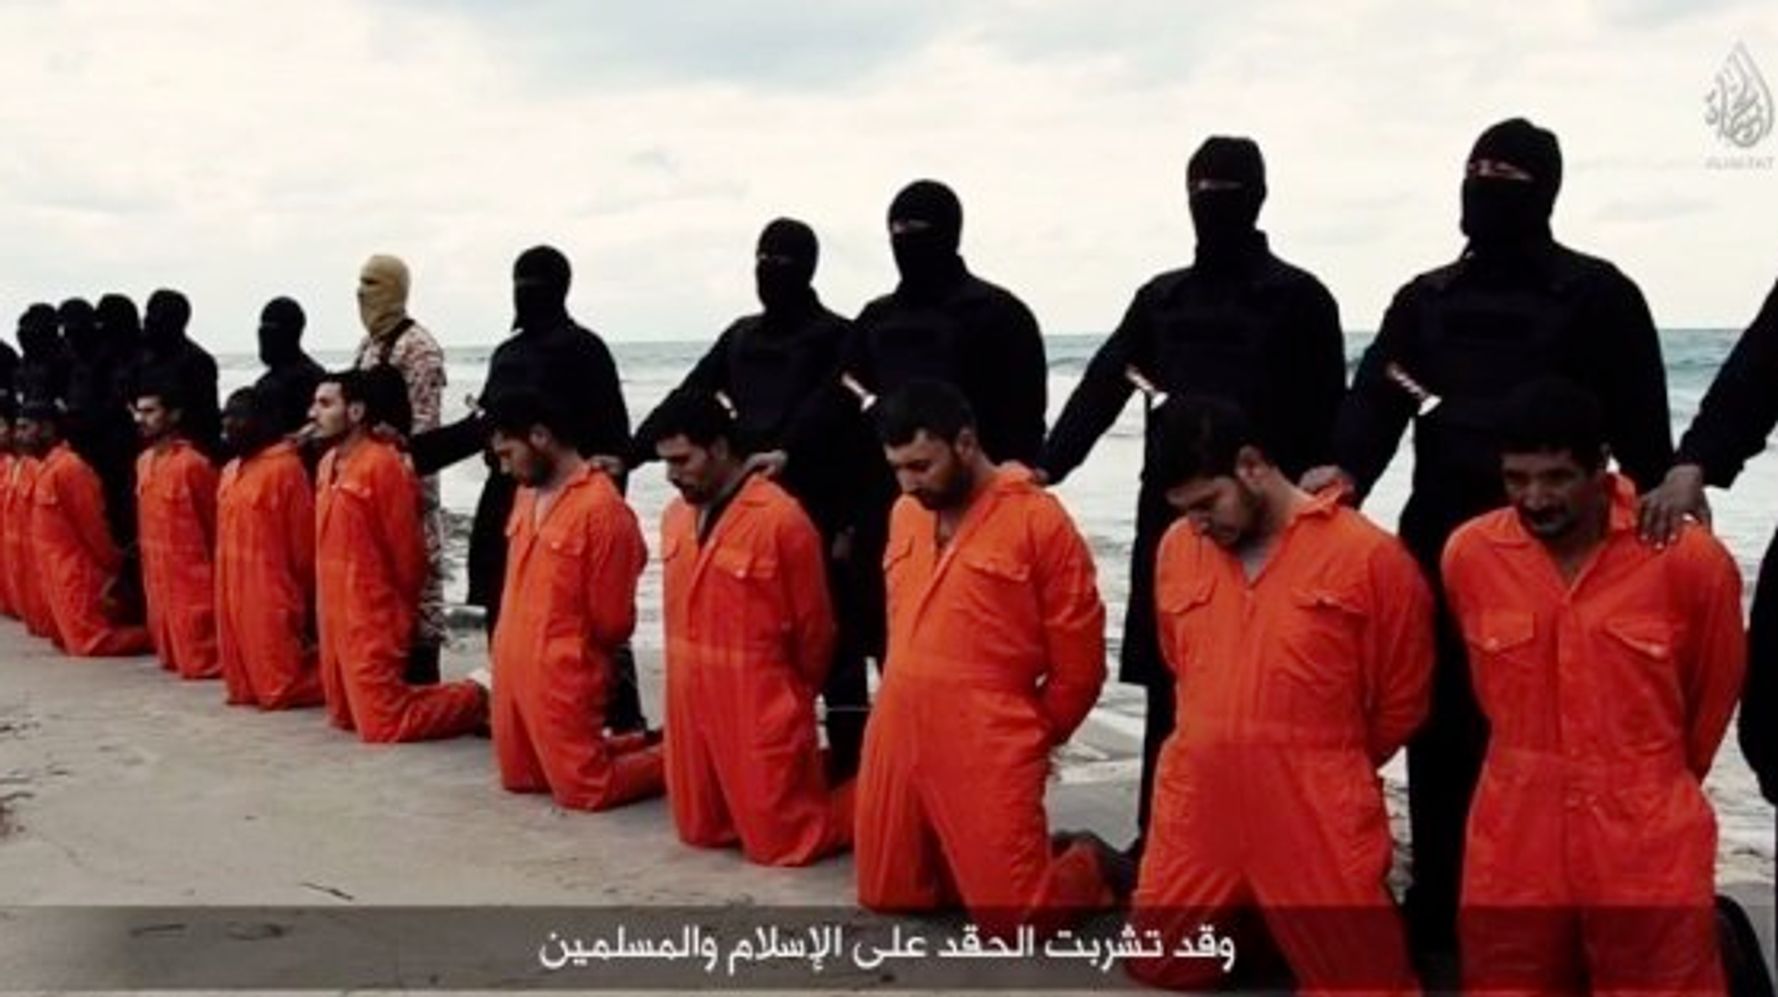 ダーイシュ イスラム国 のグループ キリスト教系のエジプト人21人を殺害する動画を公開 ハフポスト News